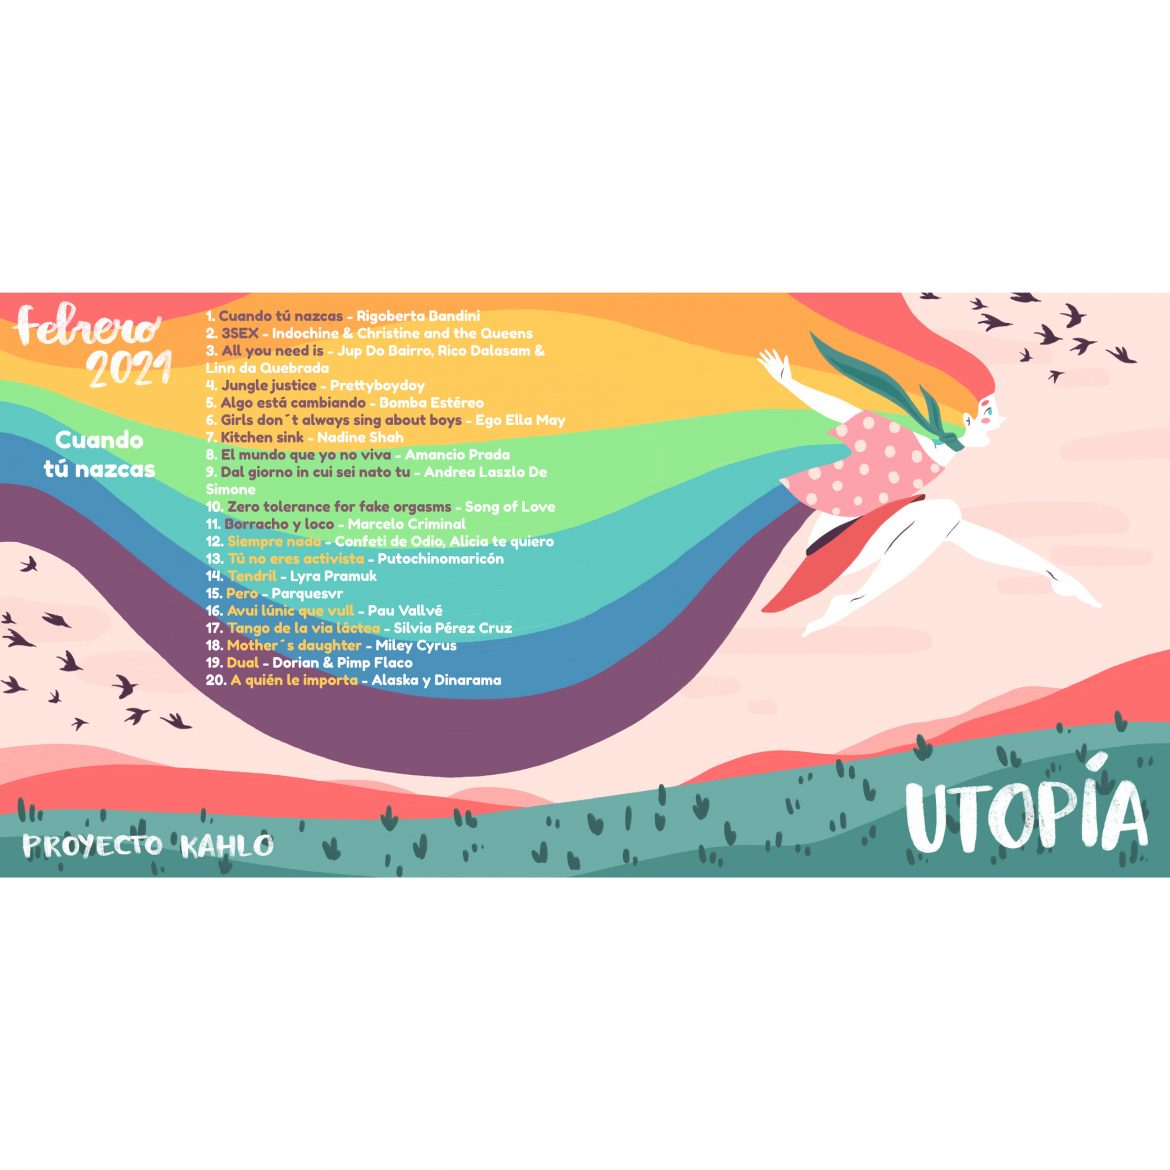 febrero2021 lista musical utopía proyecto kahlo feminismo